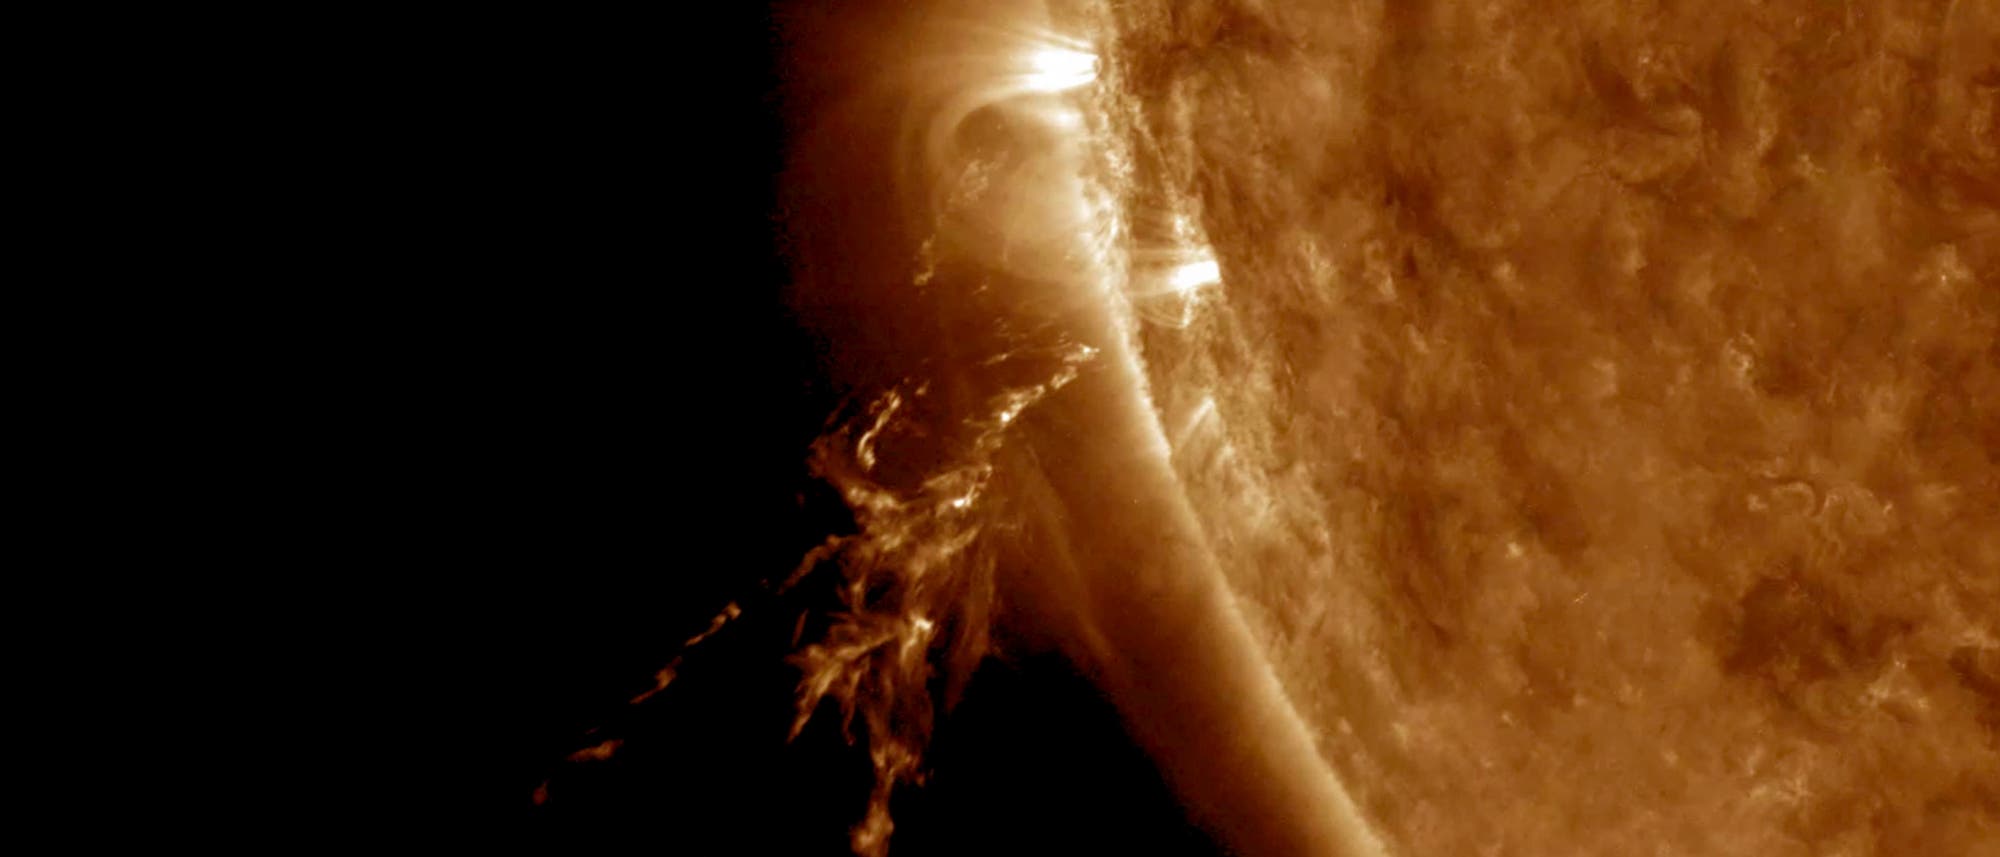 Am 18. Oktober 2017 wurde dieser Ausbruch auf der Sonnenoberfläche ­beobachtet, bei dem Sonnenplasma ins All geschleudert wurde. Die Energiequelle der Sonne ist die Verschmelzung von Atom­kernen in ihrem heißen Inneren.